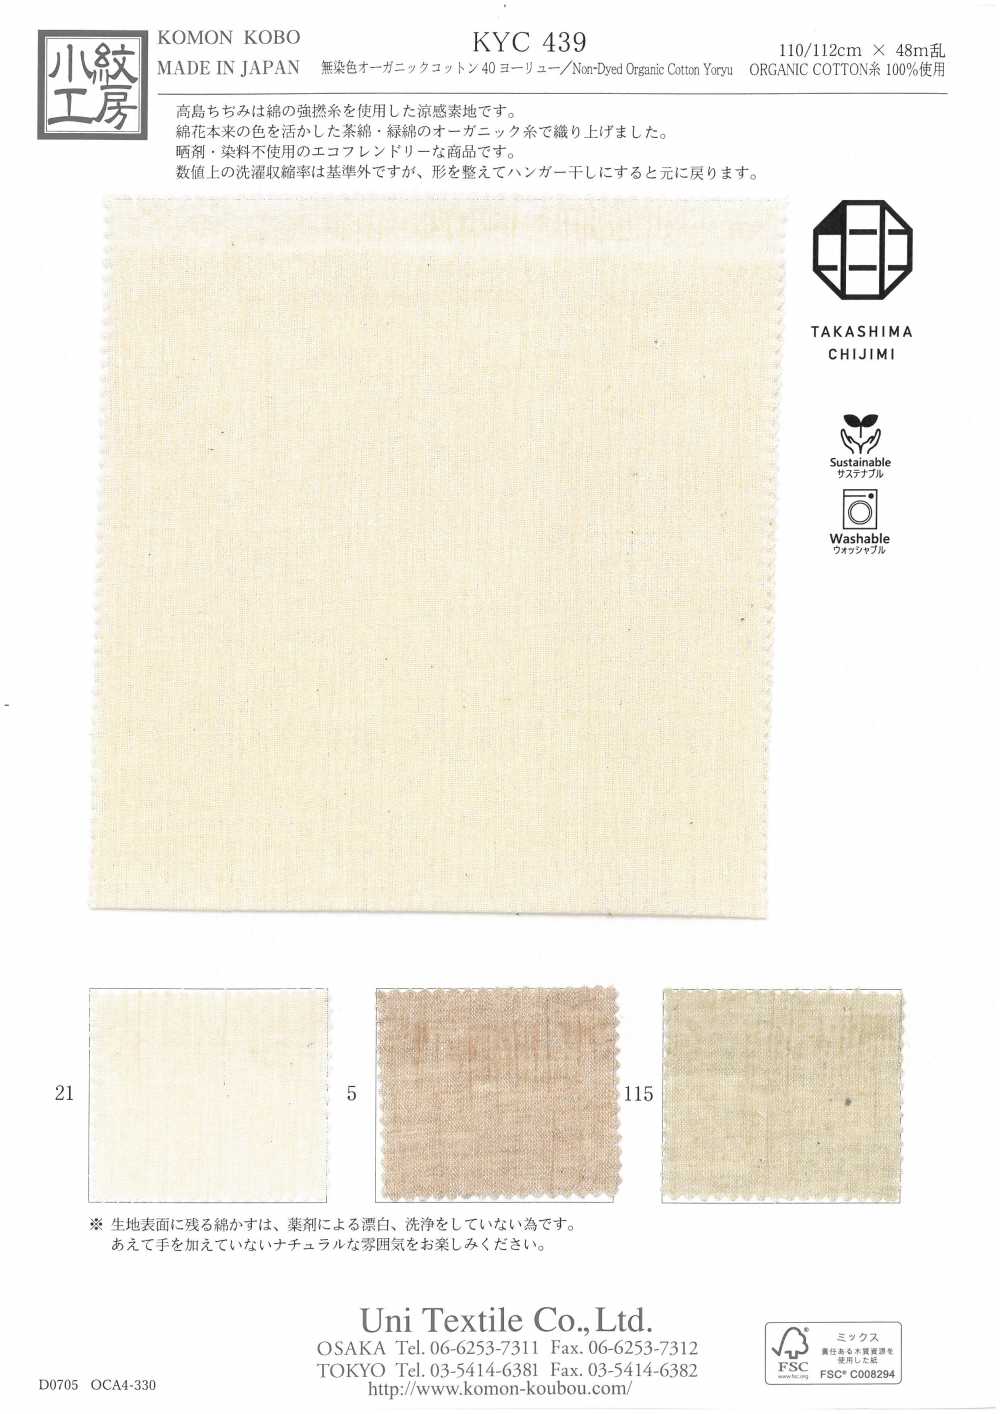 KYC439 Coton Bio Non Teint 40 Yoryu[Fabrication De Textile] Uni Textile